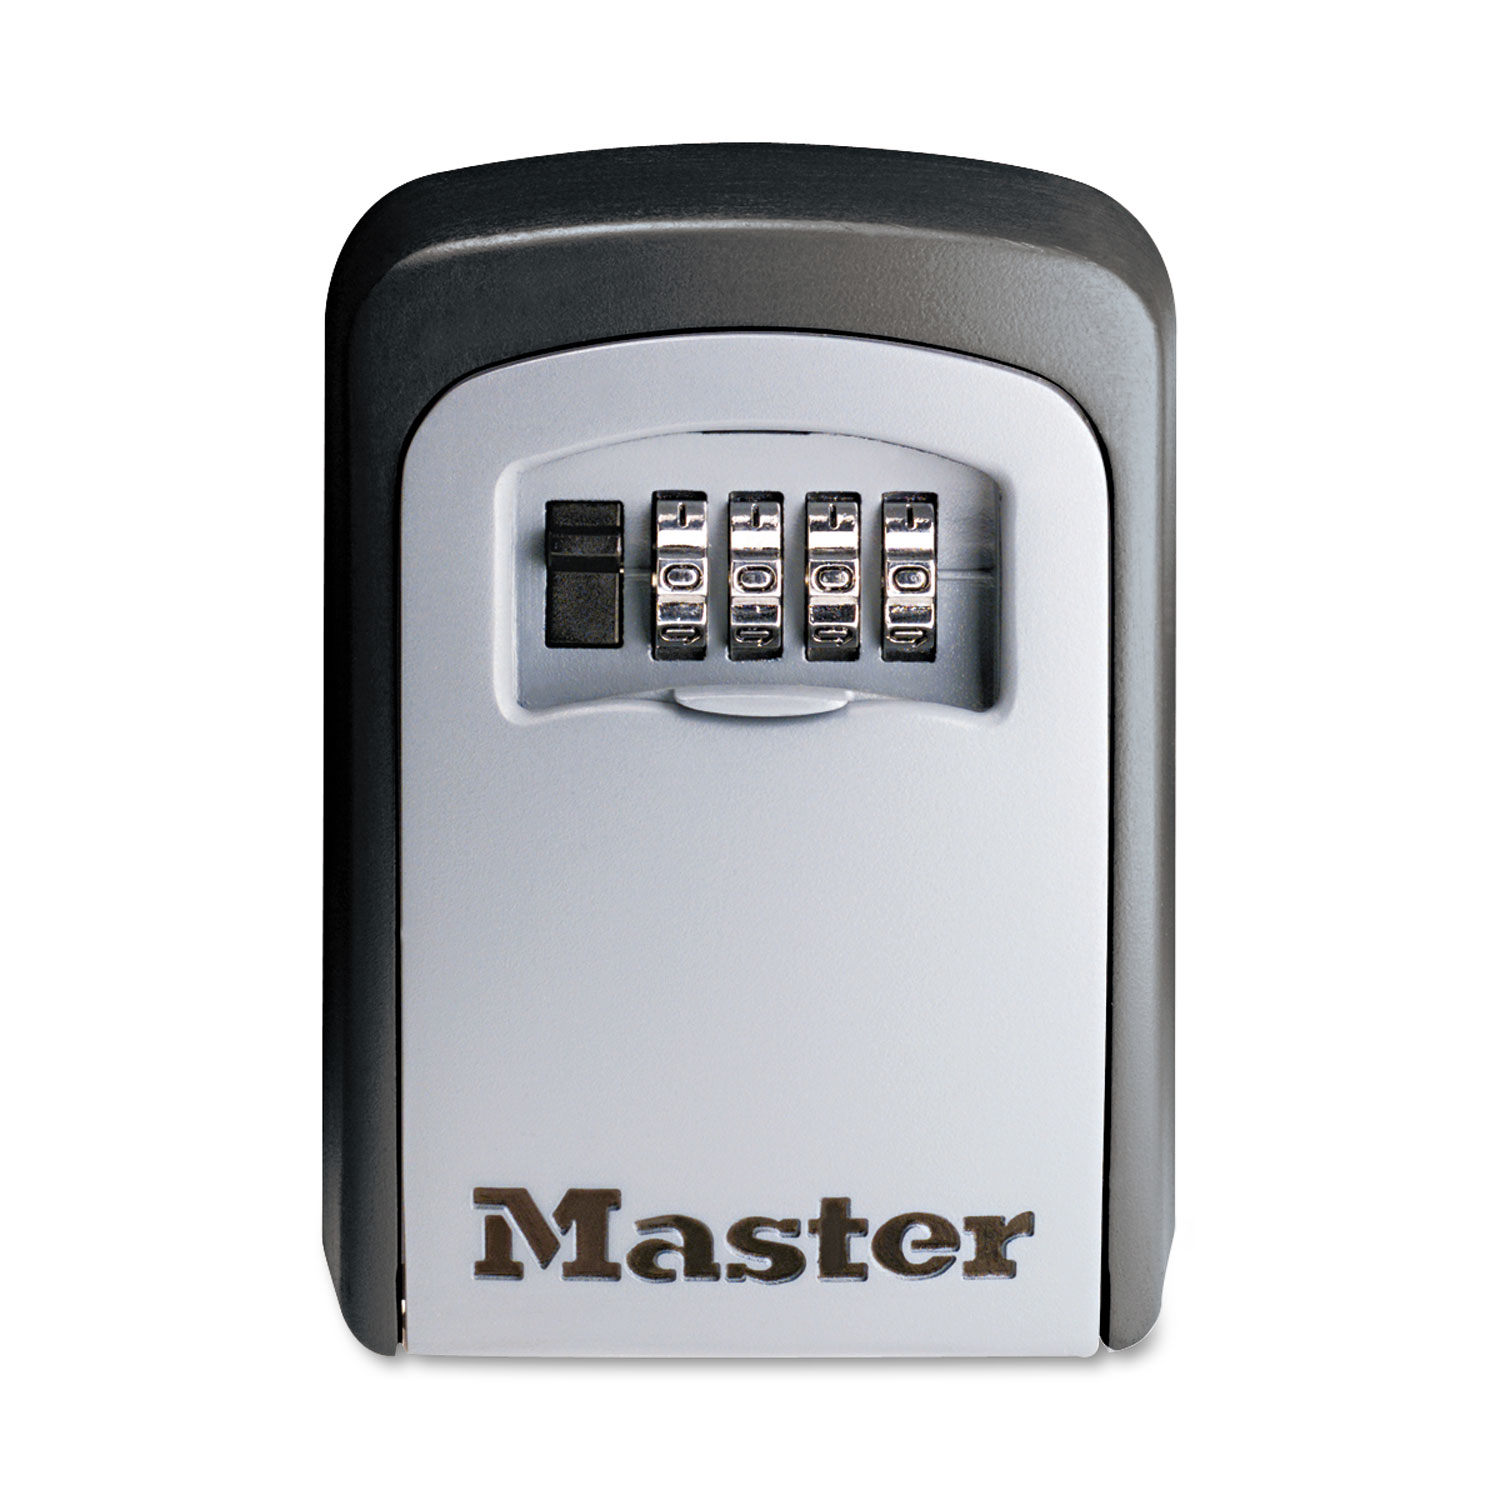  Master Lock 5401D Locking Combination 5 Key Steel Box, 3 1/4w x 1 1/2d x 4 5/8h, Black/Silver (MLK5401D) 